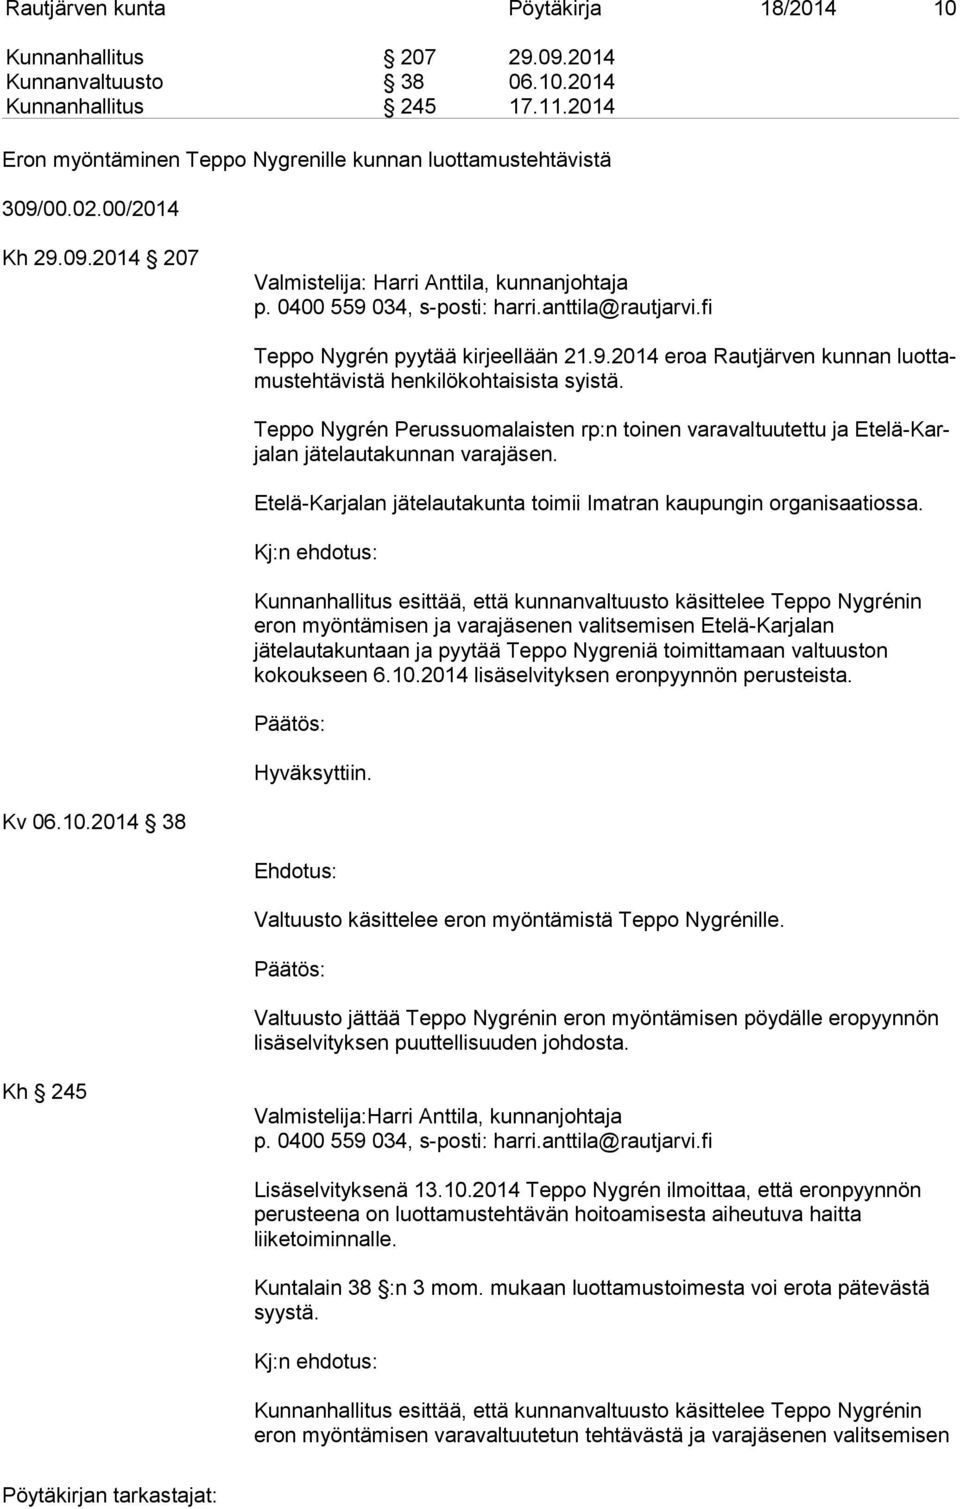 Teppo Nygrén Perussuomalaisten rp:n toinen varavaltuutettu ja Ete lä-karja lan jätelautakunnan varajäsen. Etelä-Karjalan jätelautakunta toimii Imatran kaupungin organisaatiossa.